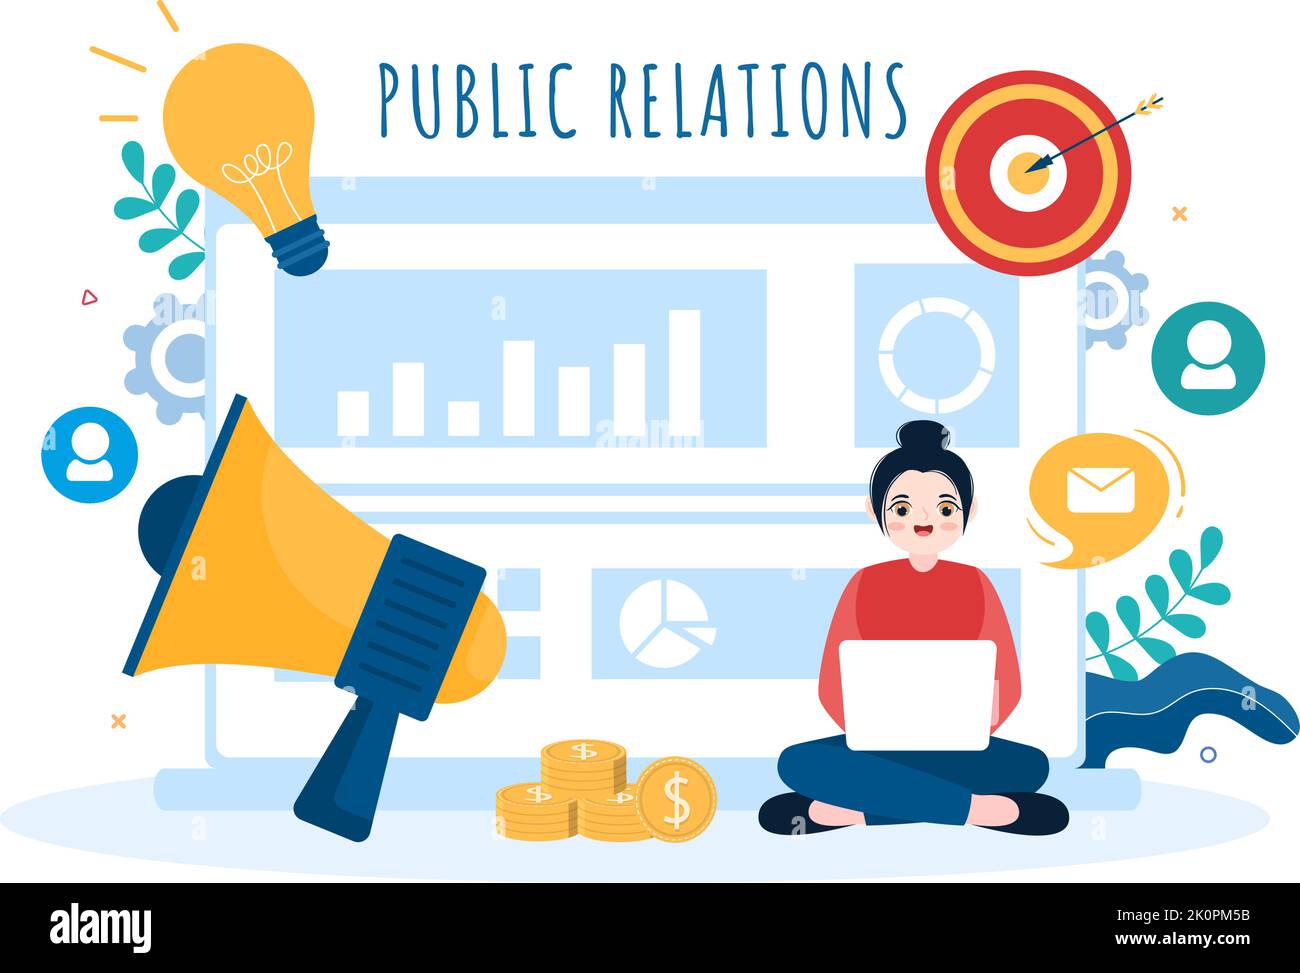 Modello di pubbliche relazioni mano disegnata Cartoon Flat Illustrazione con il team per idea di campagna di marketing attraverso i mass media per pubblicizzare il vostro business Illustrazione Vettoriale